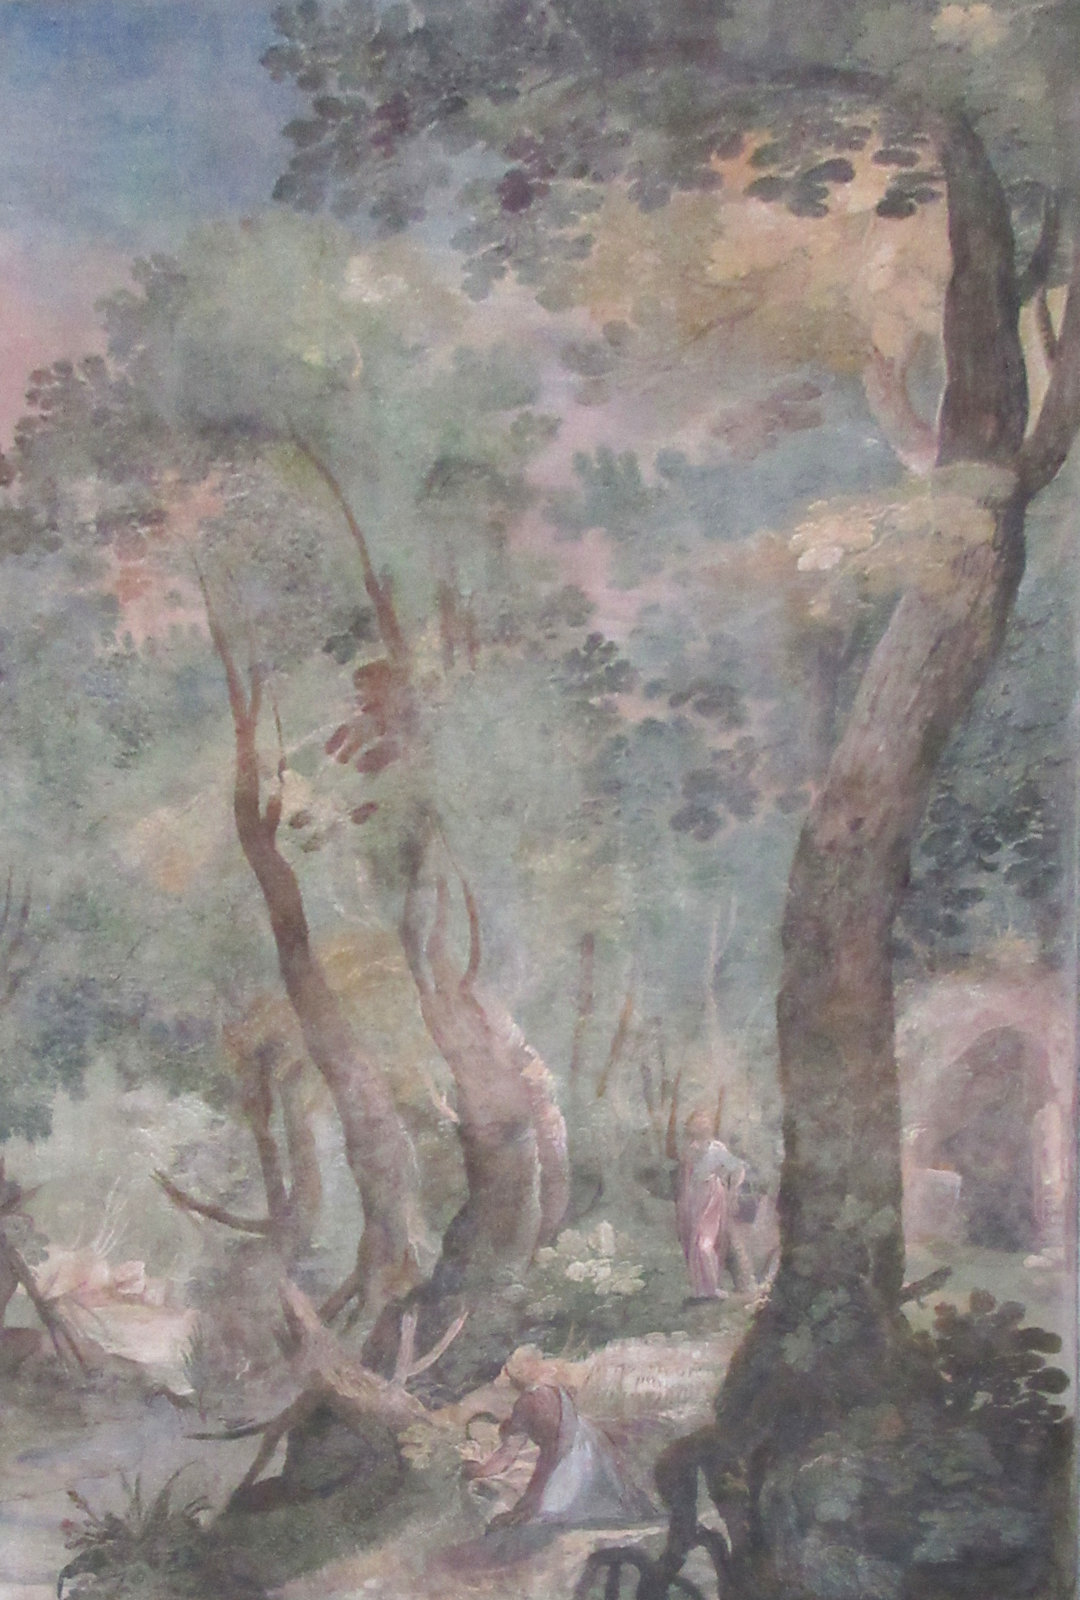 Fresko: Das Martyrium von Marcellinus und Petrus im Wald von Lorbeerbäumen, um 1600, in der Kirche San Vitale in Rom